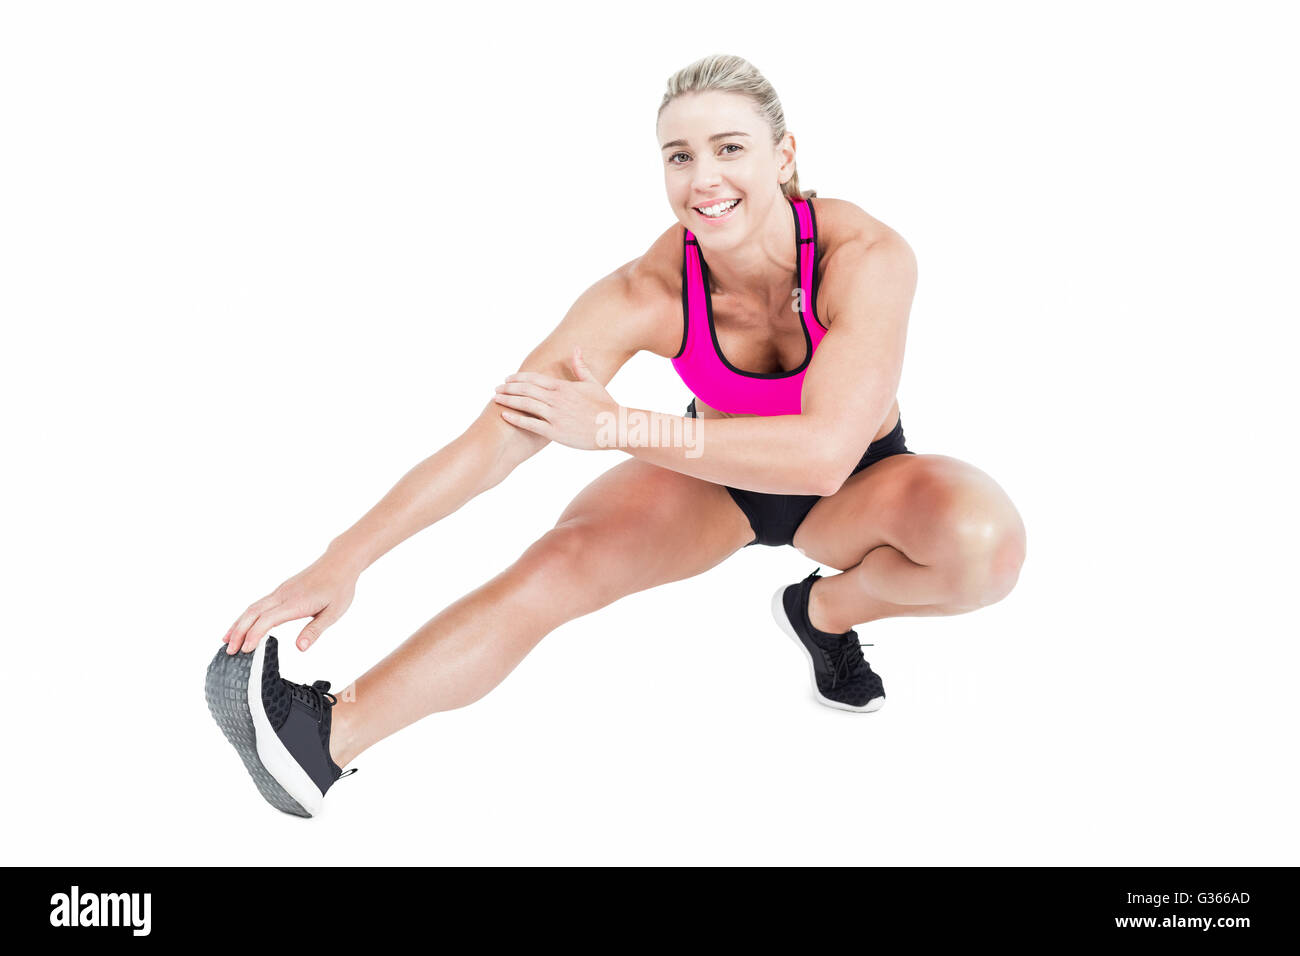 Female athlete stretching Stock Photo